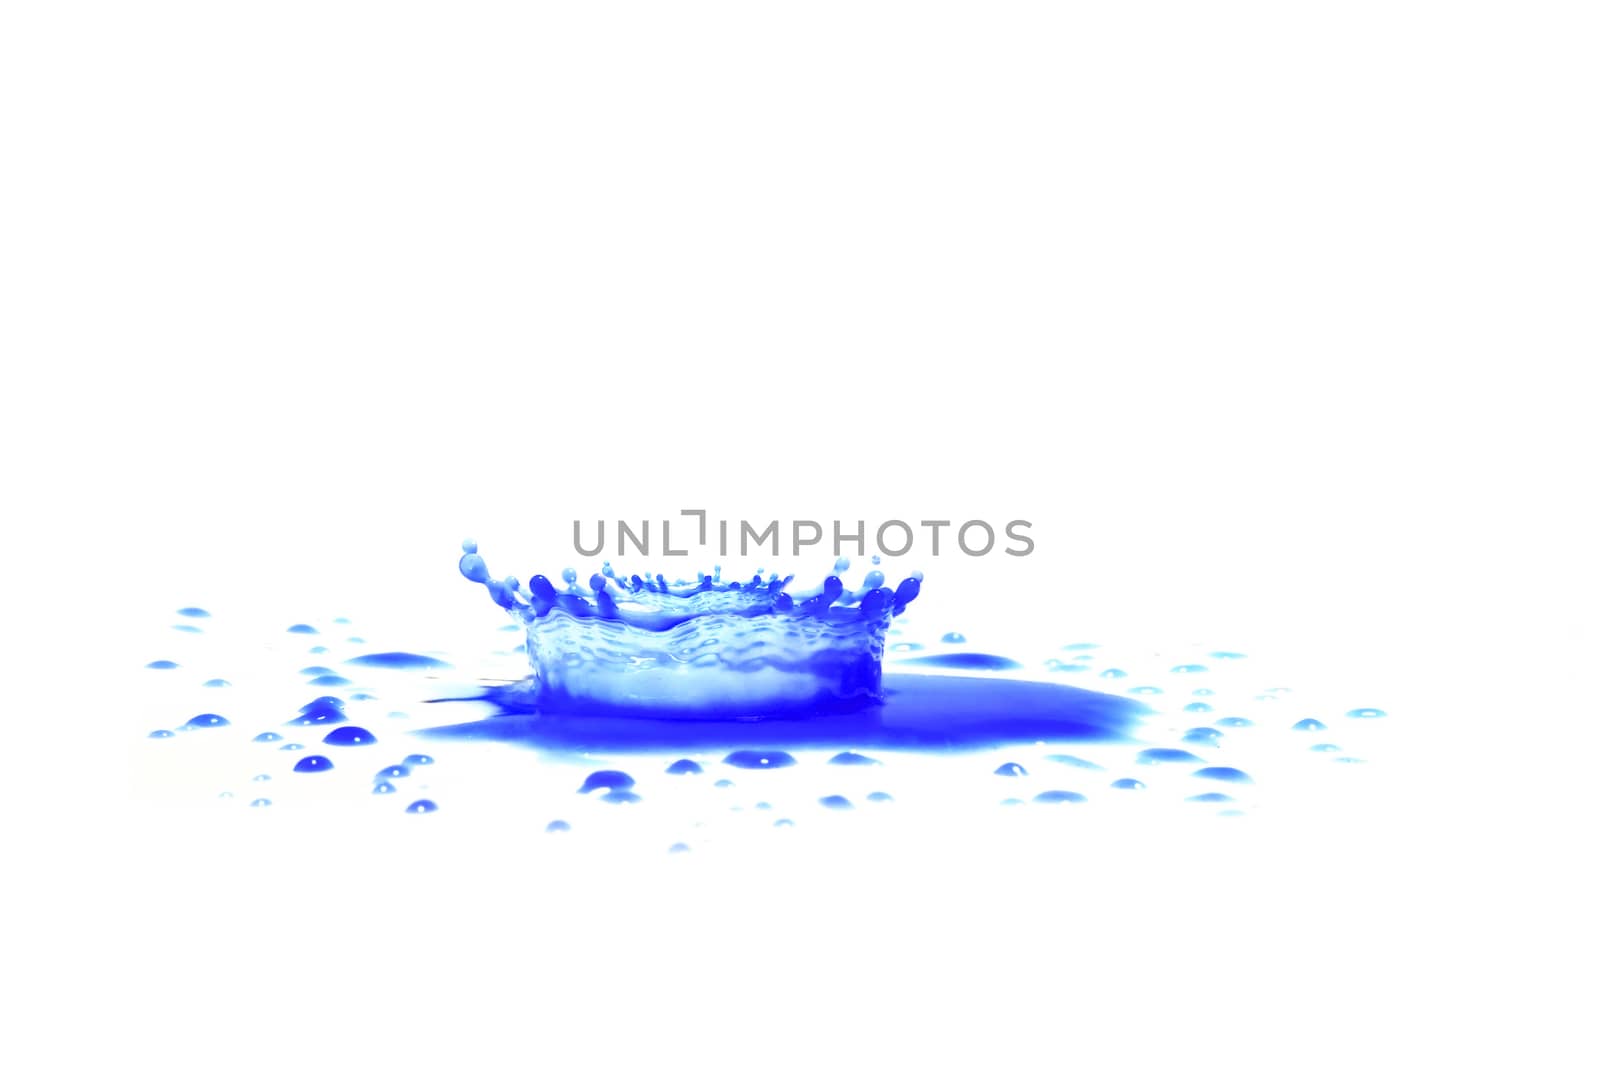 Blue paint splashing isolated on white